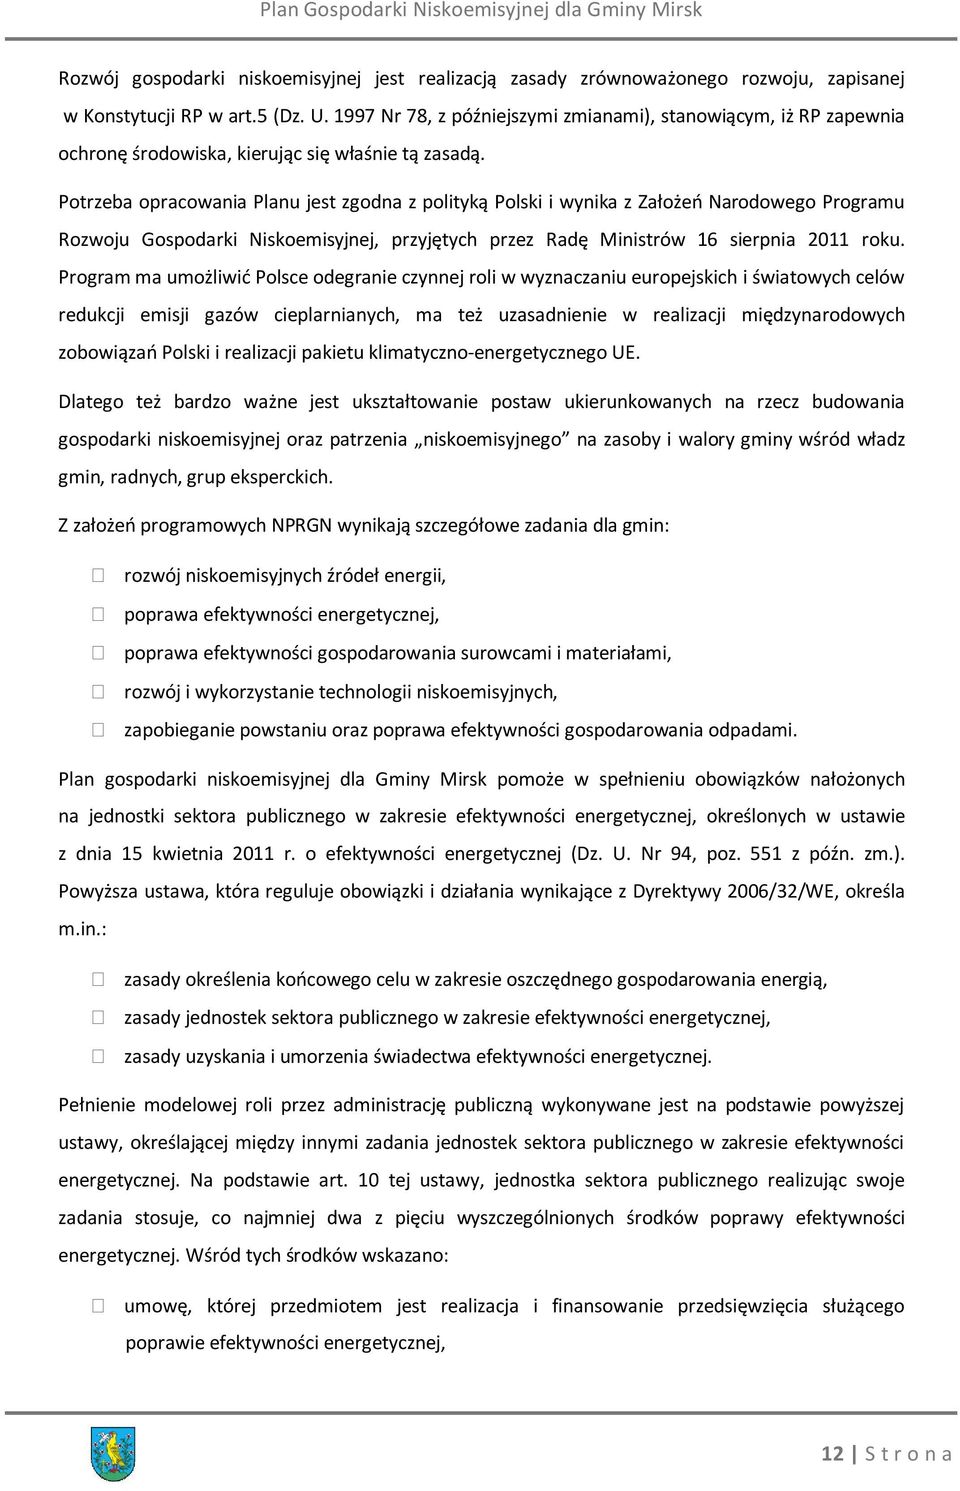 Potrzeba opracowania Planu jest zgodna z polityką Polski i wynika z Założeń Narodowego Programu Rozwoju Gospodarki Niskoemisyjnej, przyjętych przez Radę Ministrów 16 sierpnia 2011 roku.